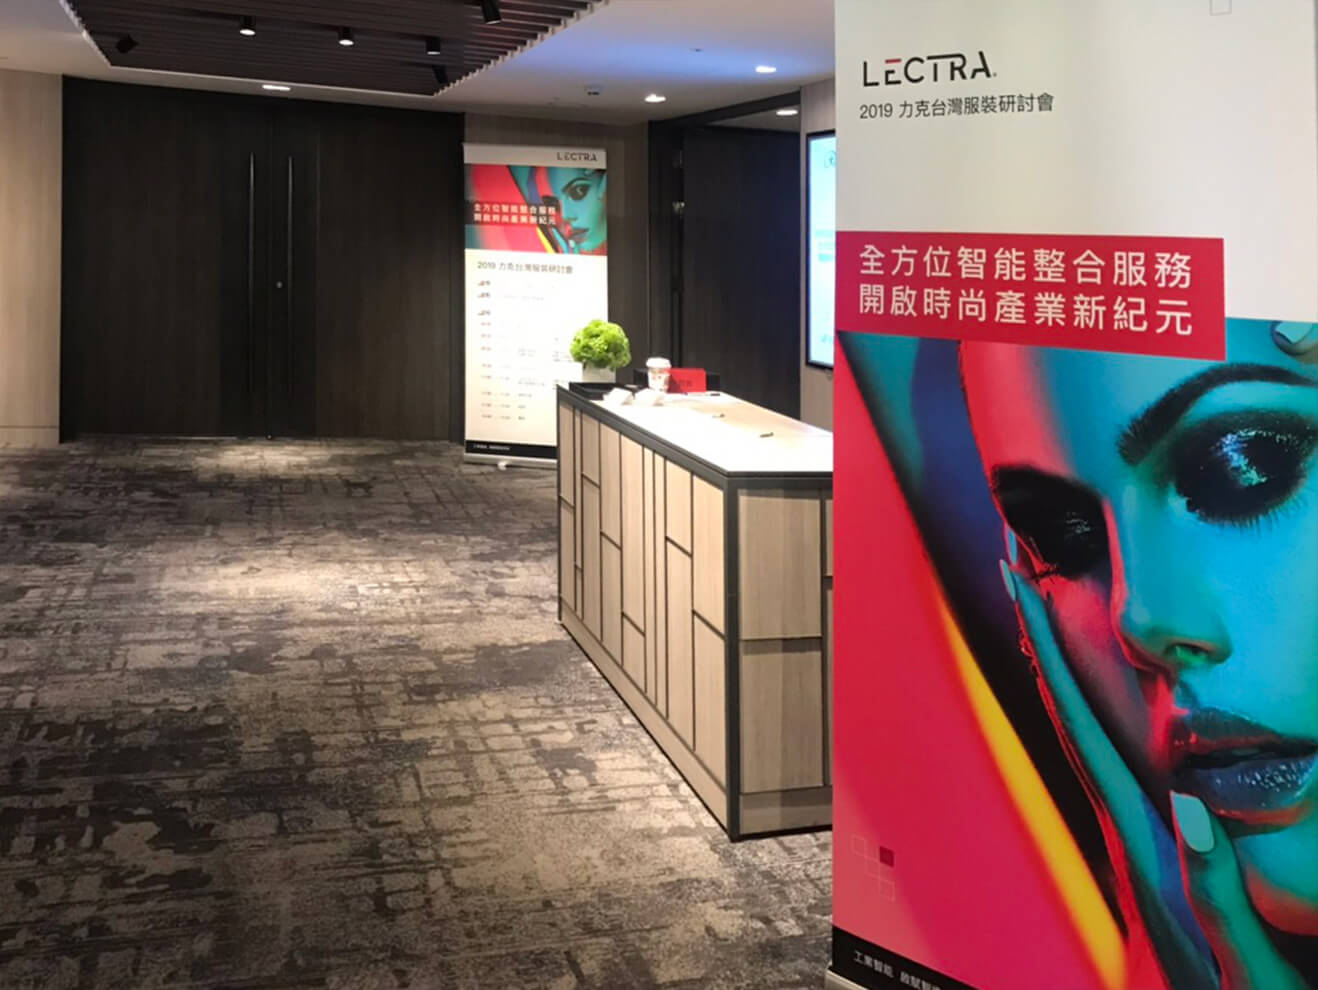 LECTRA 2019台灣服裝研討會會場